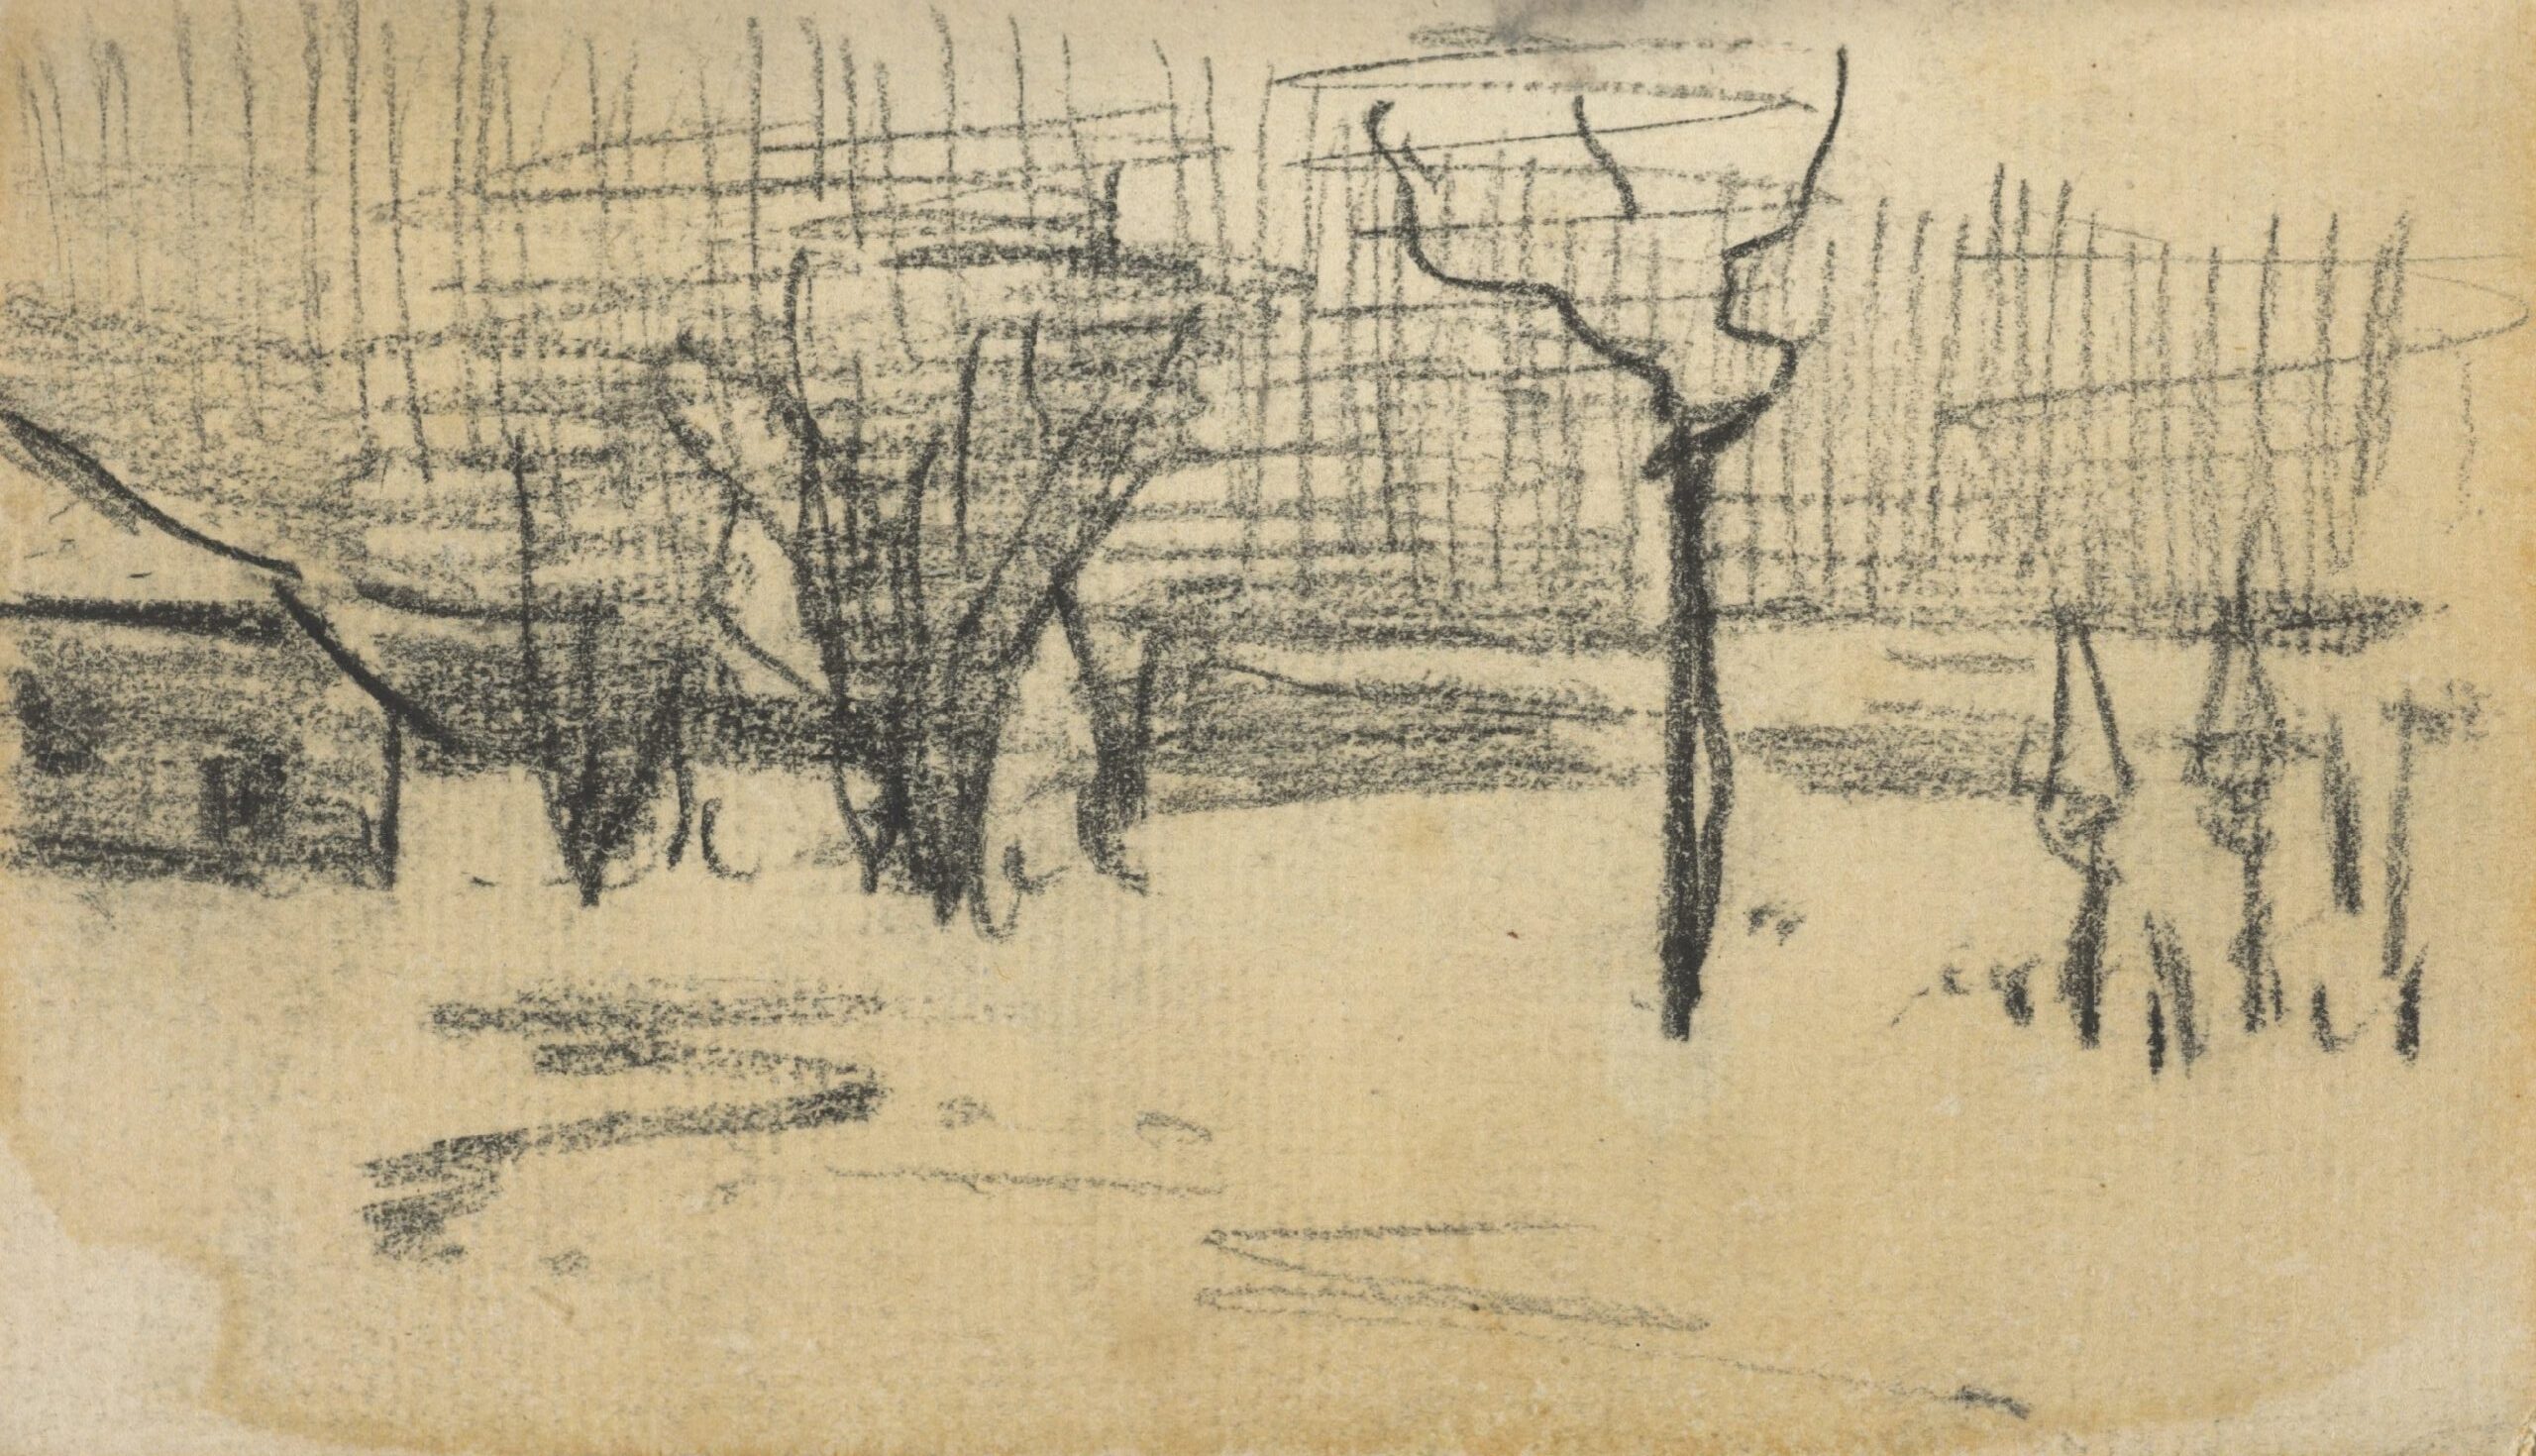 Tuin in de sneeuw Vincent van Gogh (1853 - 1890), Nuenen, december 1884-maart 1885